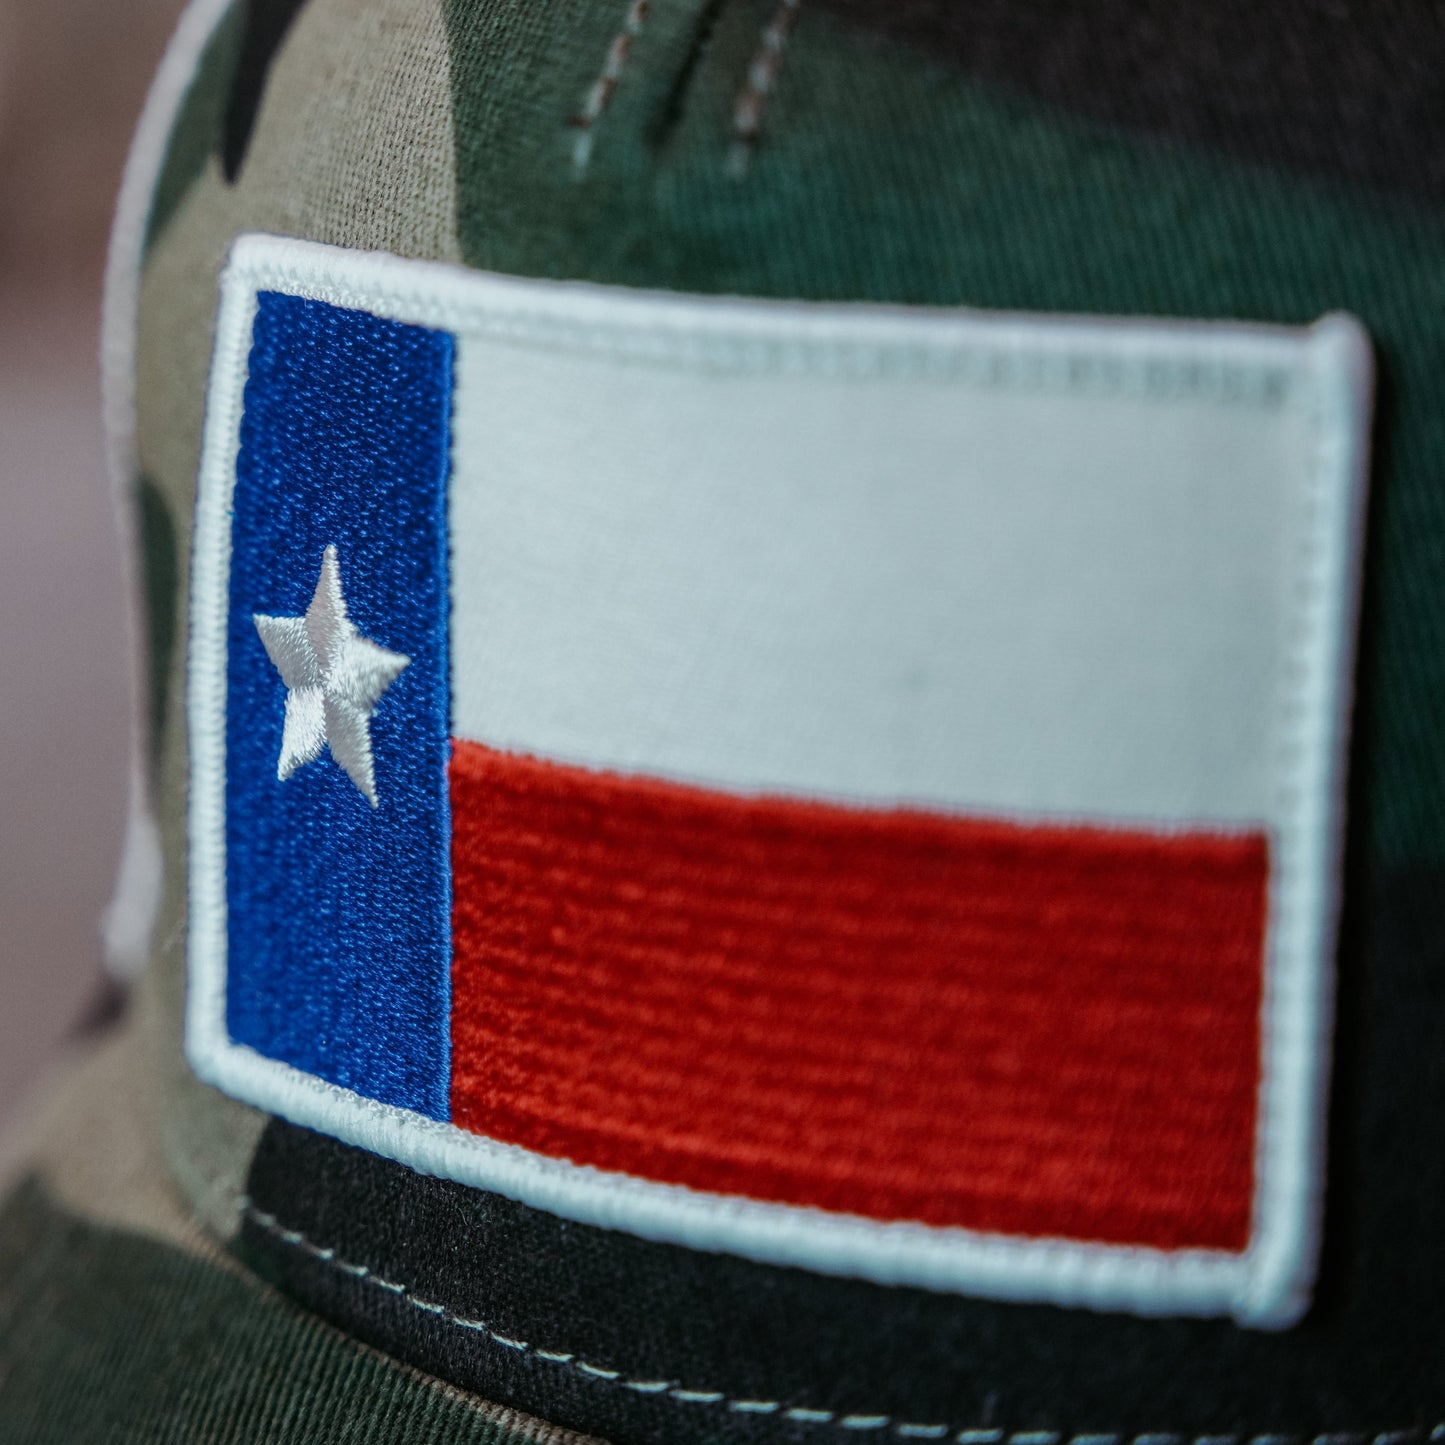 Texas Flag Camo Cap